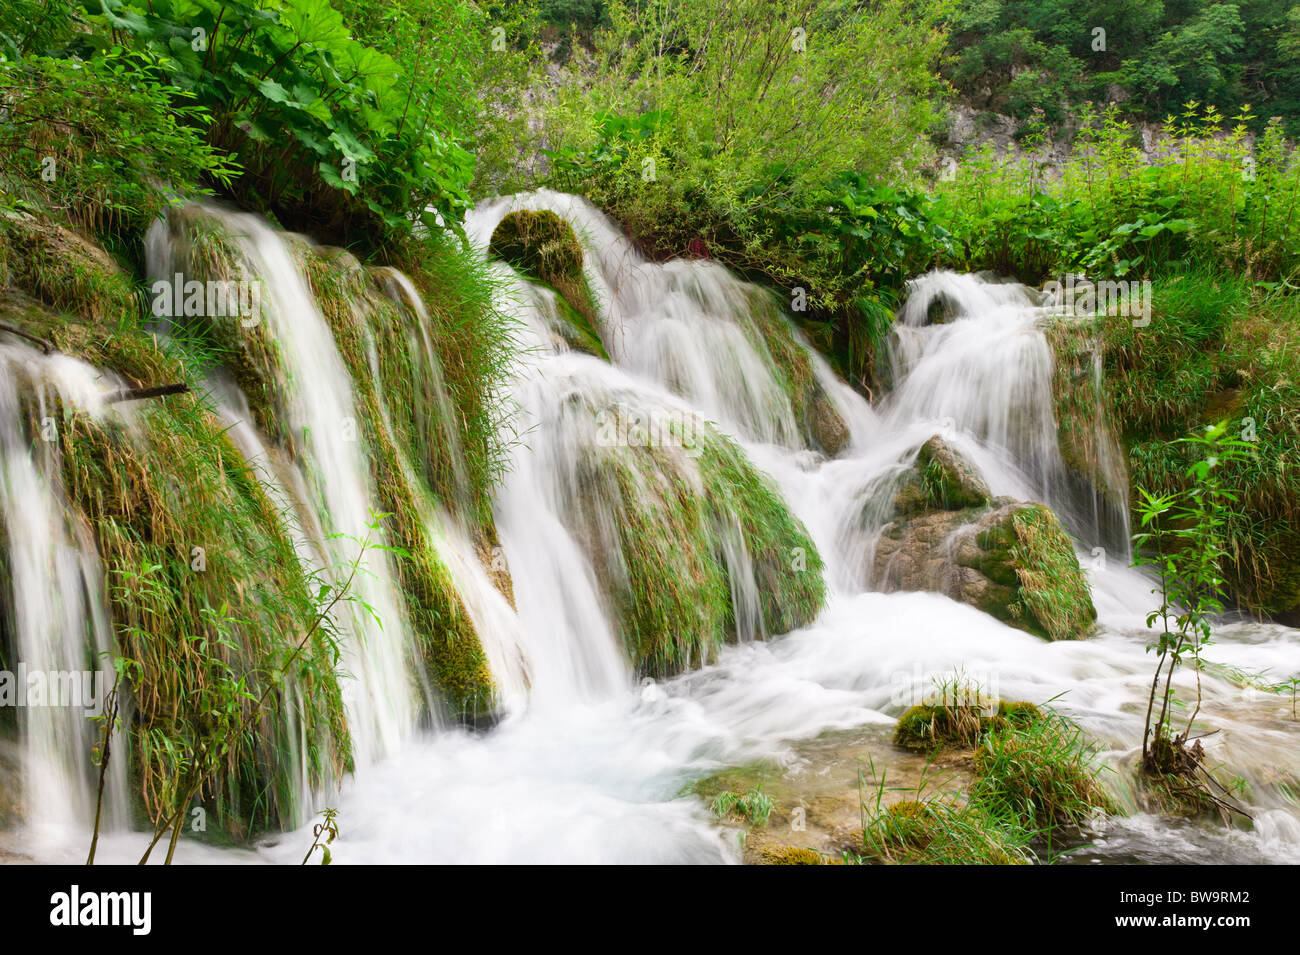 Wasserfälle im Nationalpark. Plitvice, Kroatien. Beliebtes touristisches Ausflugsziel. Stockfoto